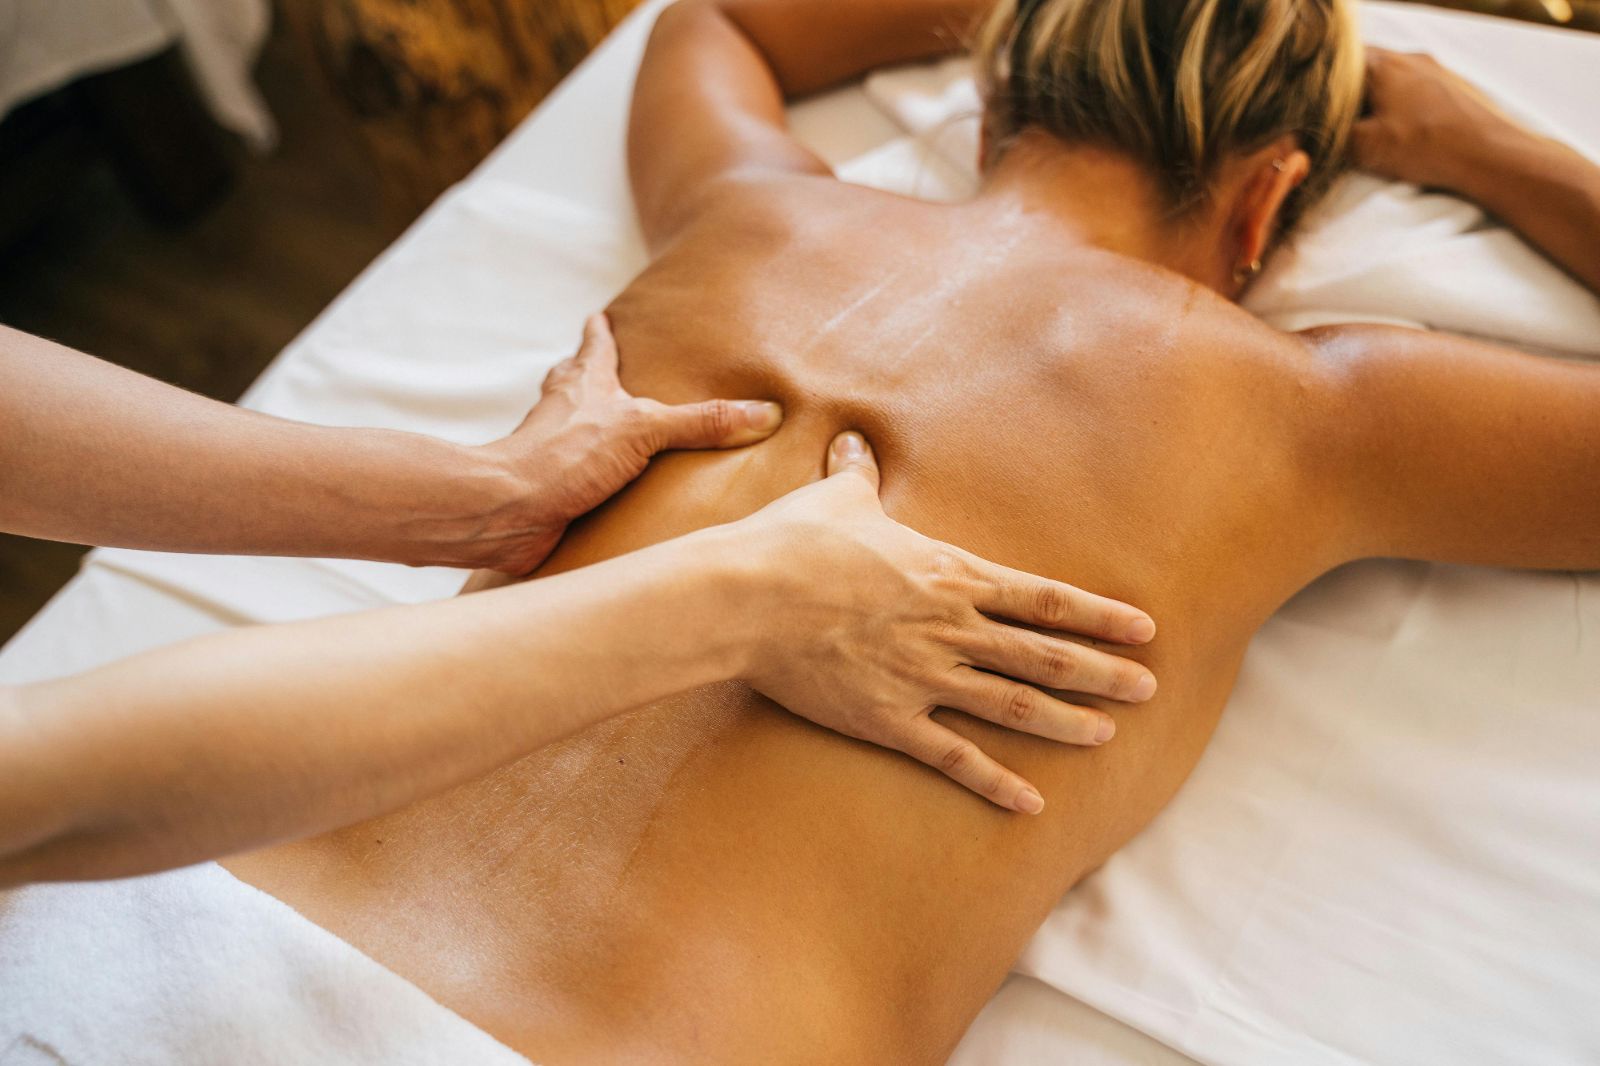 A woman enjoying a back massage